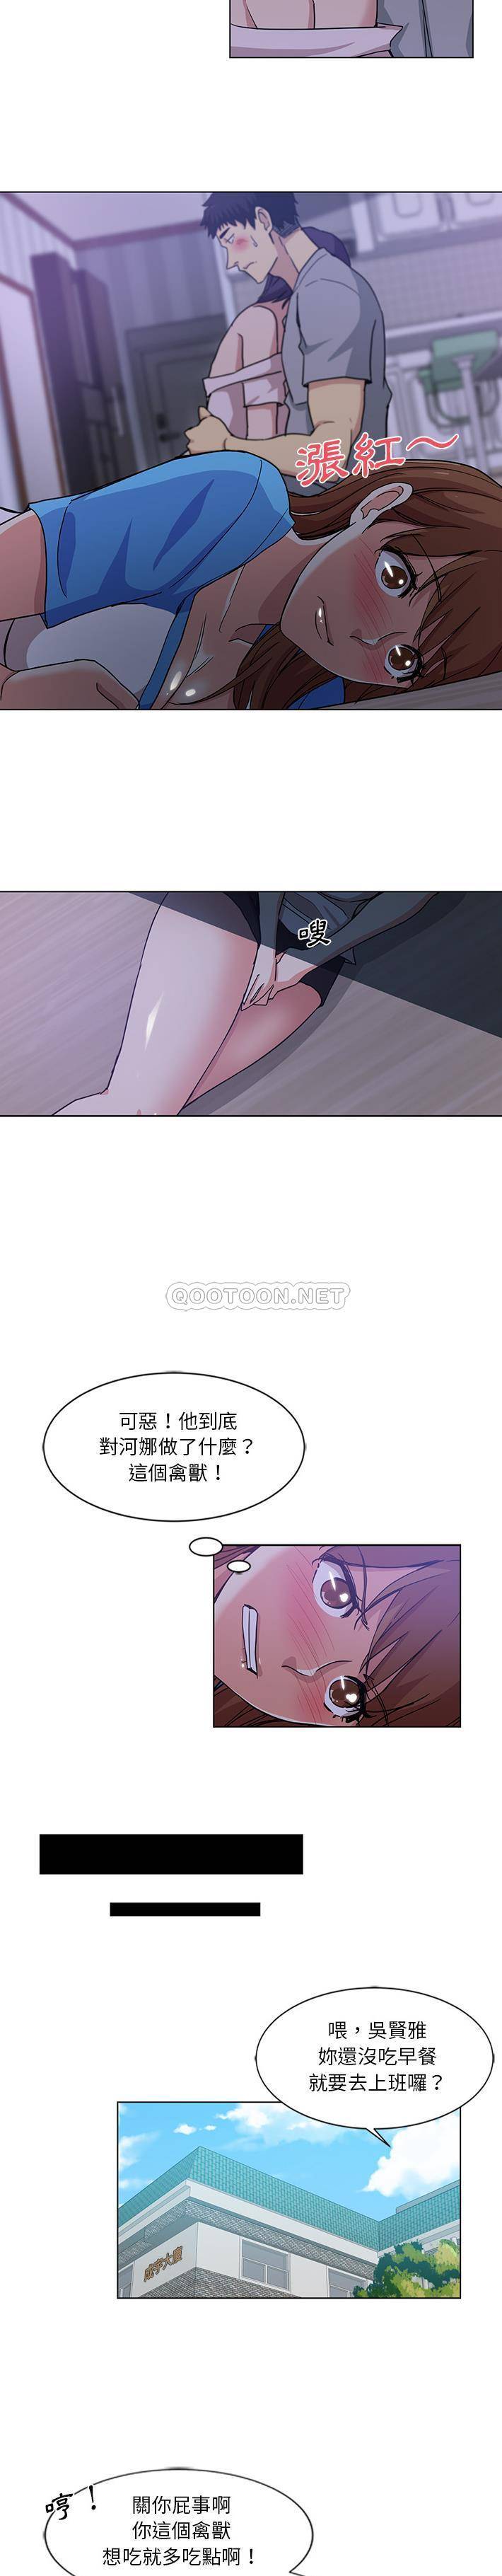 韩国污漫画 危險純友誼 第2话 7